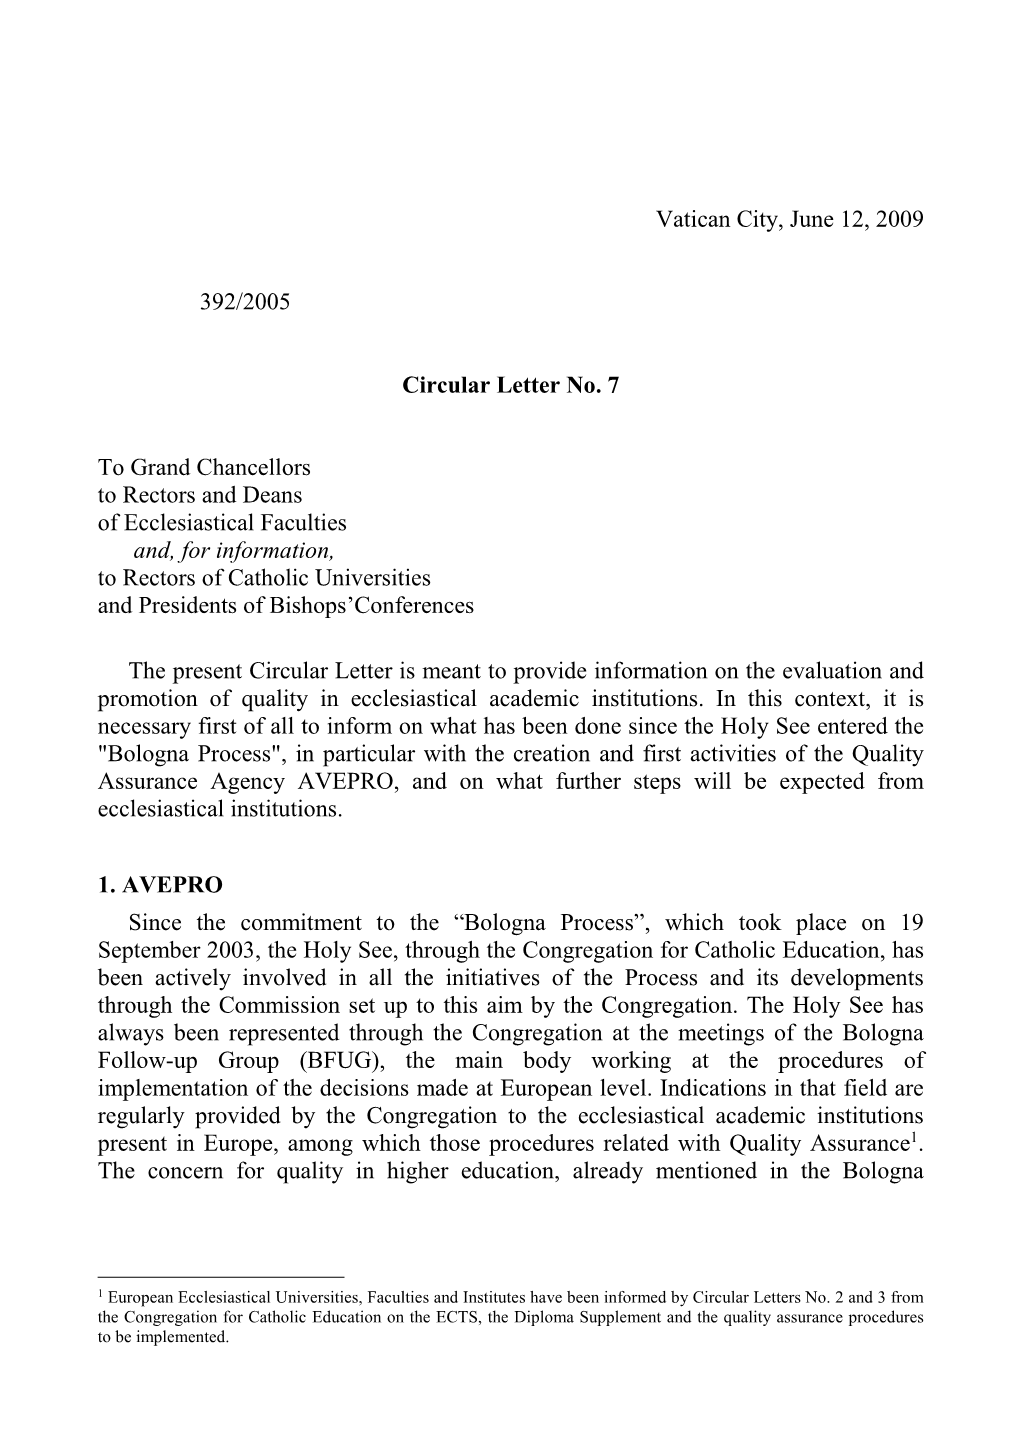 Vatican City, June 12, 2009 392/2005 Circular Letter No. 7 to Grand